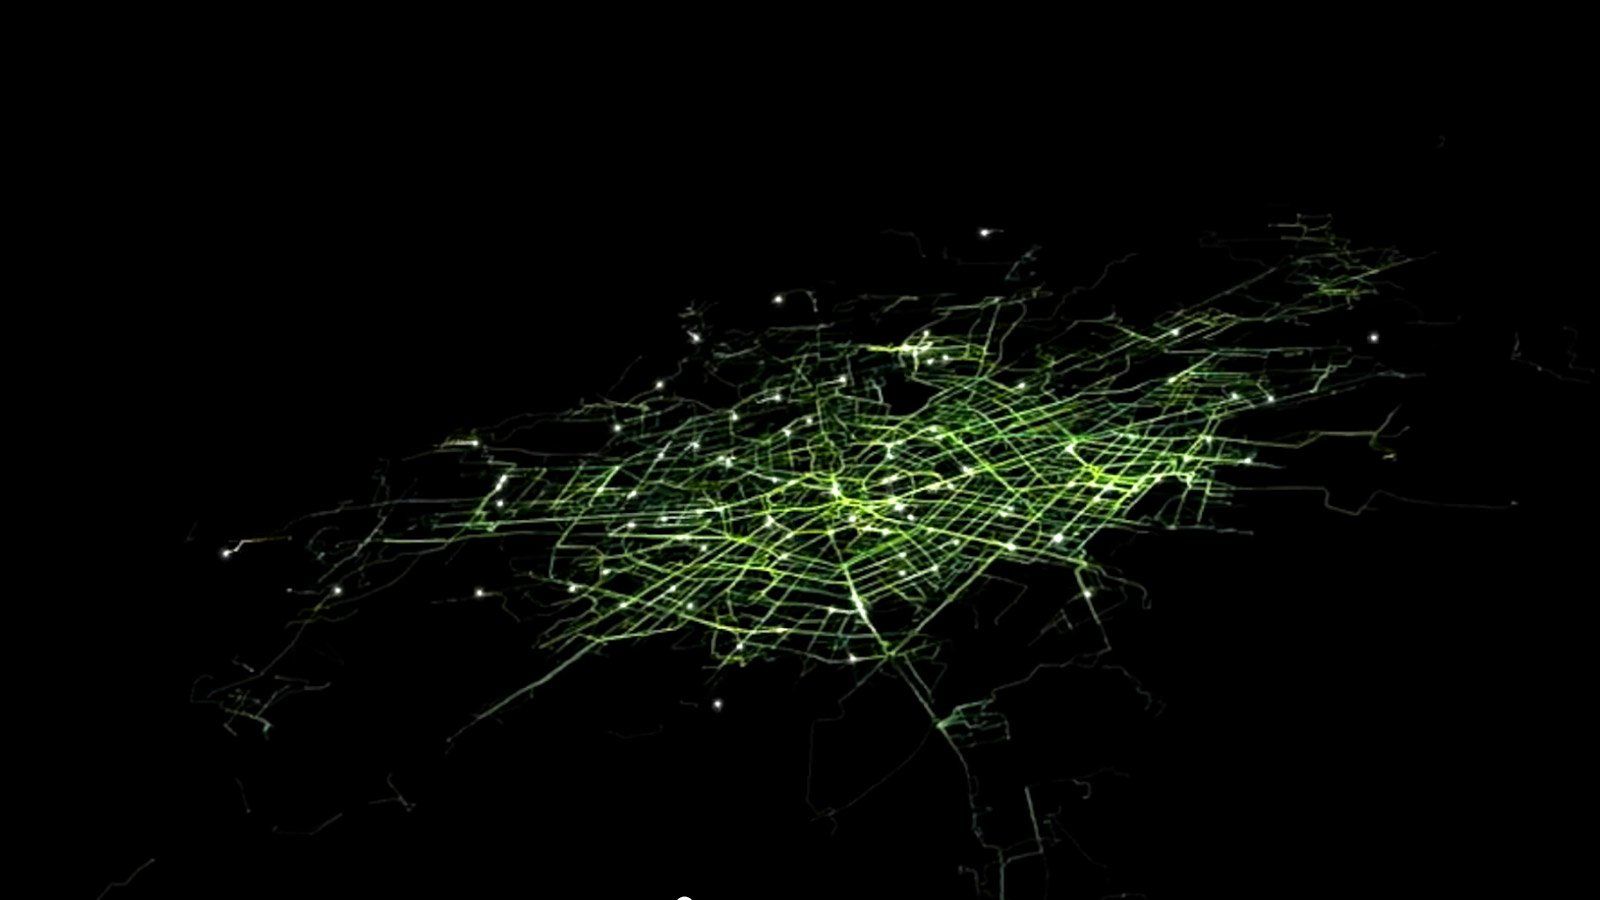 movi-bike-sharing-cities-daily-commuting-data